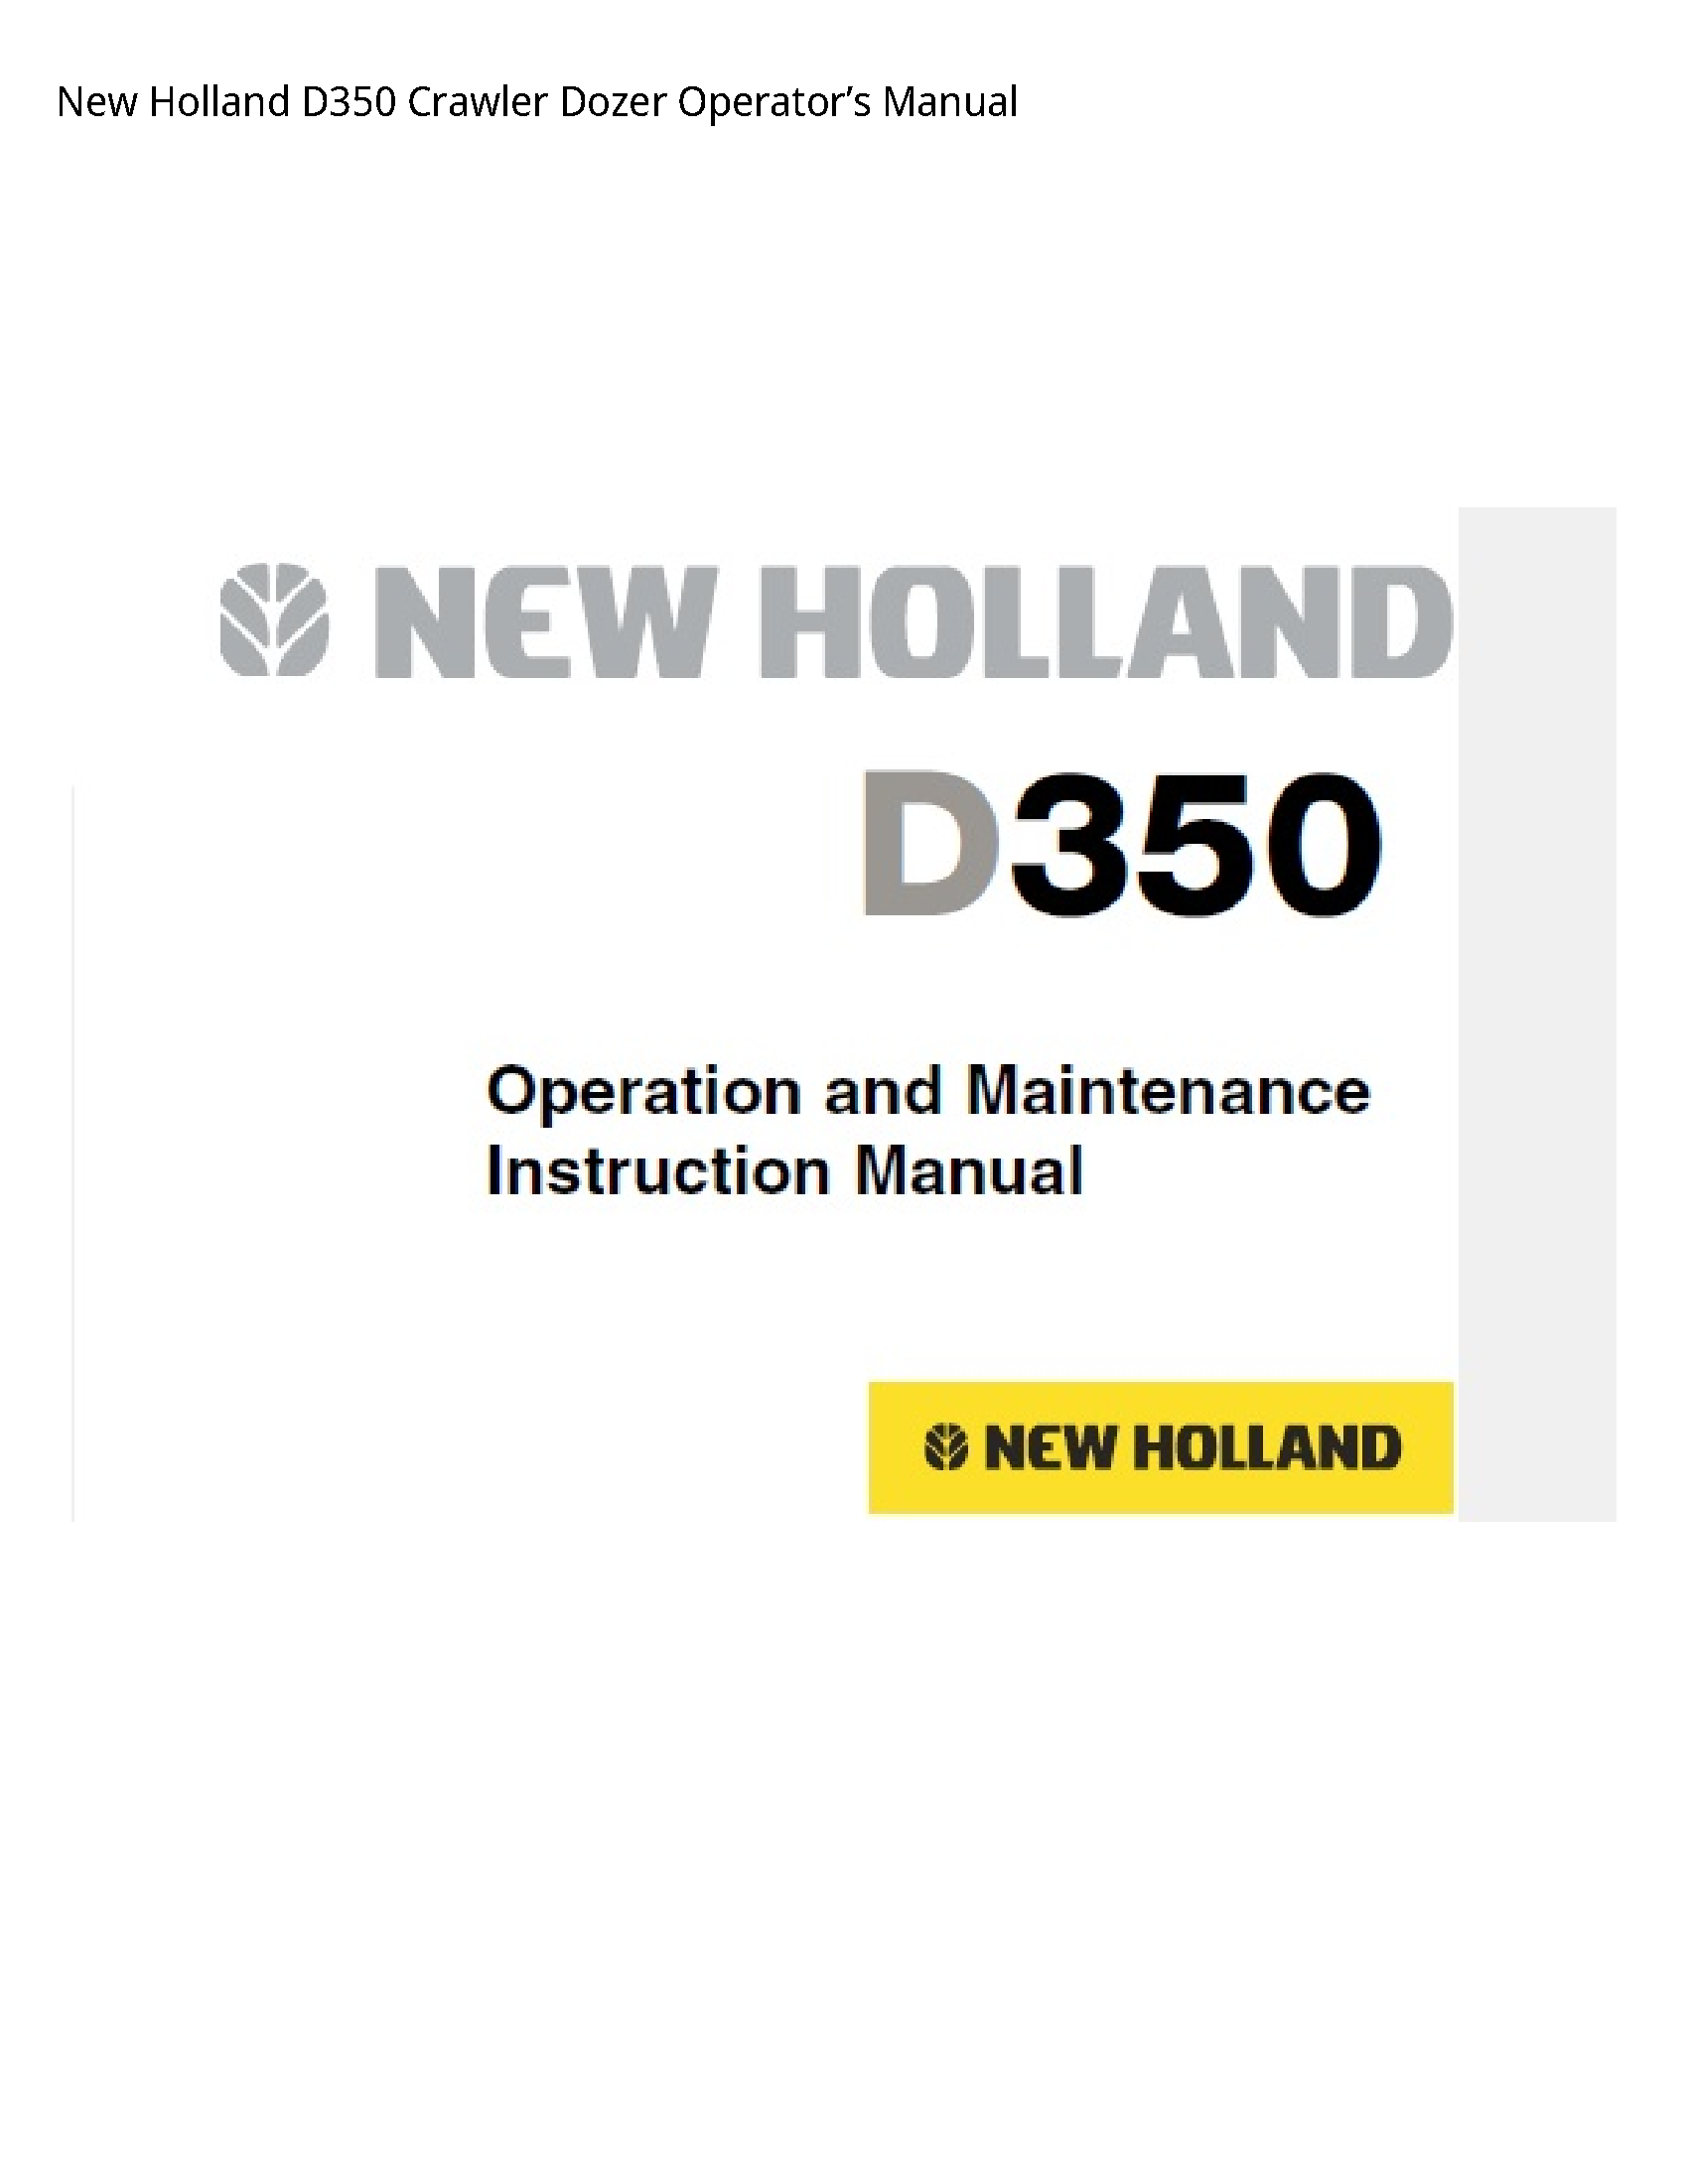 New Holland D350 Crawler Dozer Operator’s manual